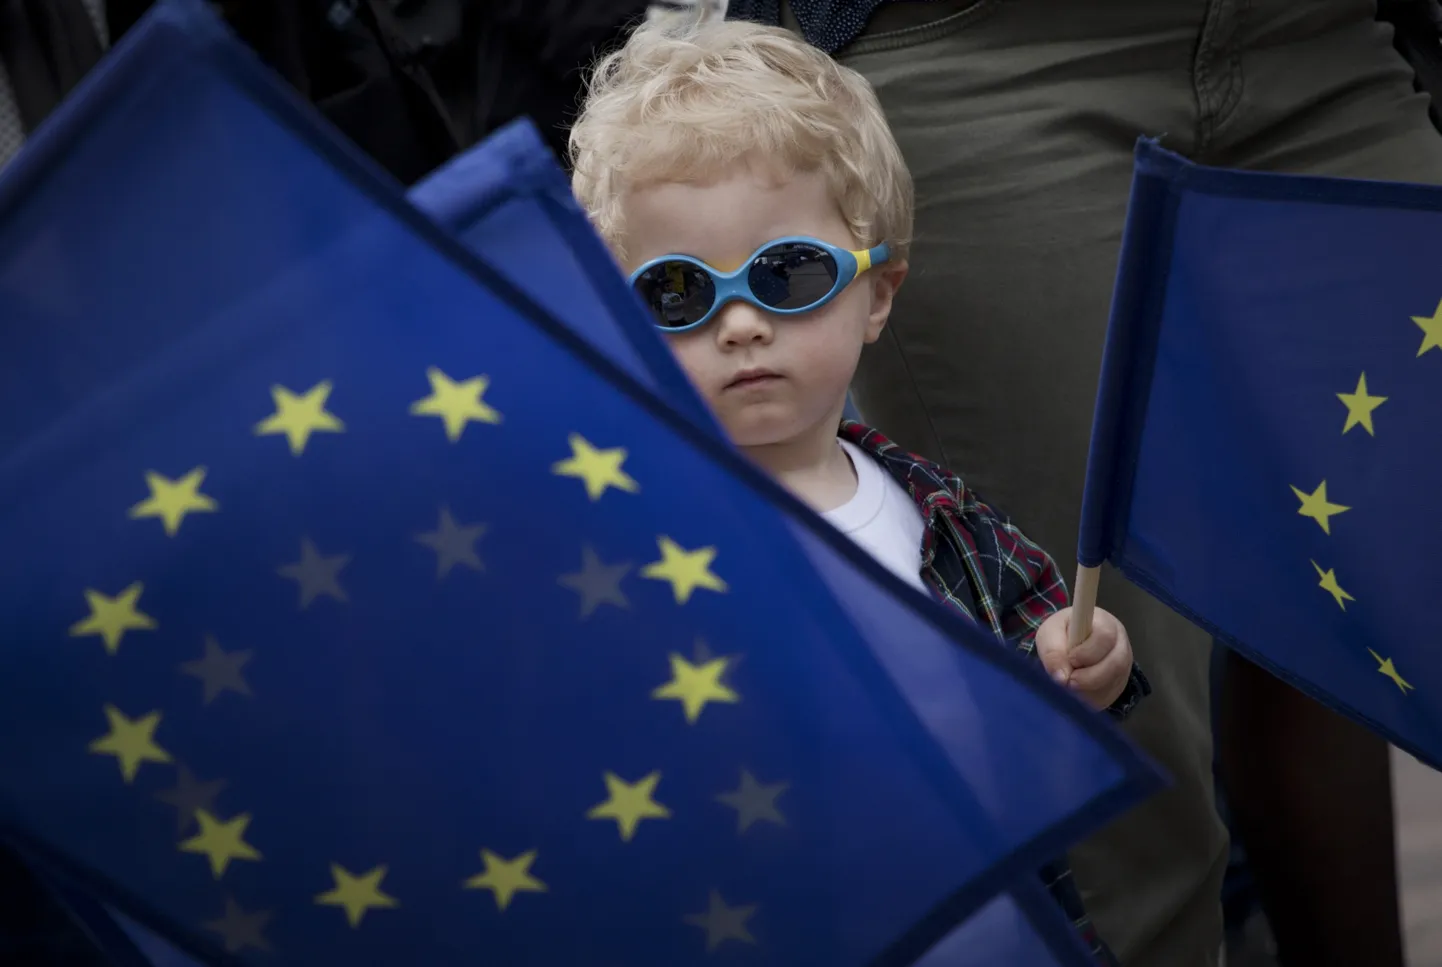 Noor Euroopa Liidu fänn Euroopa Liidu lipuga Euroopa Parlamendi ees toimunud festivalil 26. mail 2019. aastal.